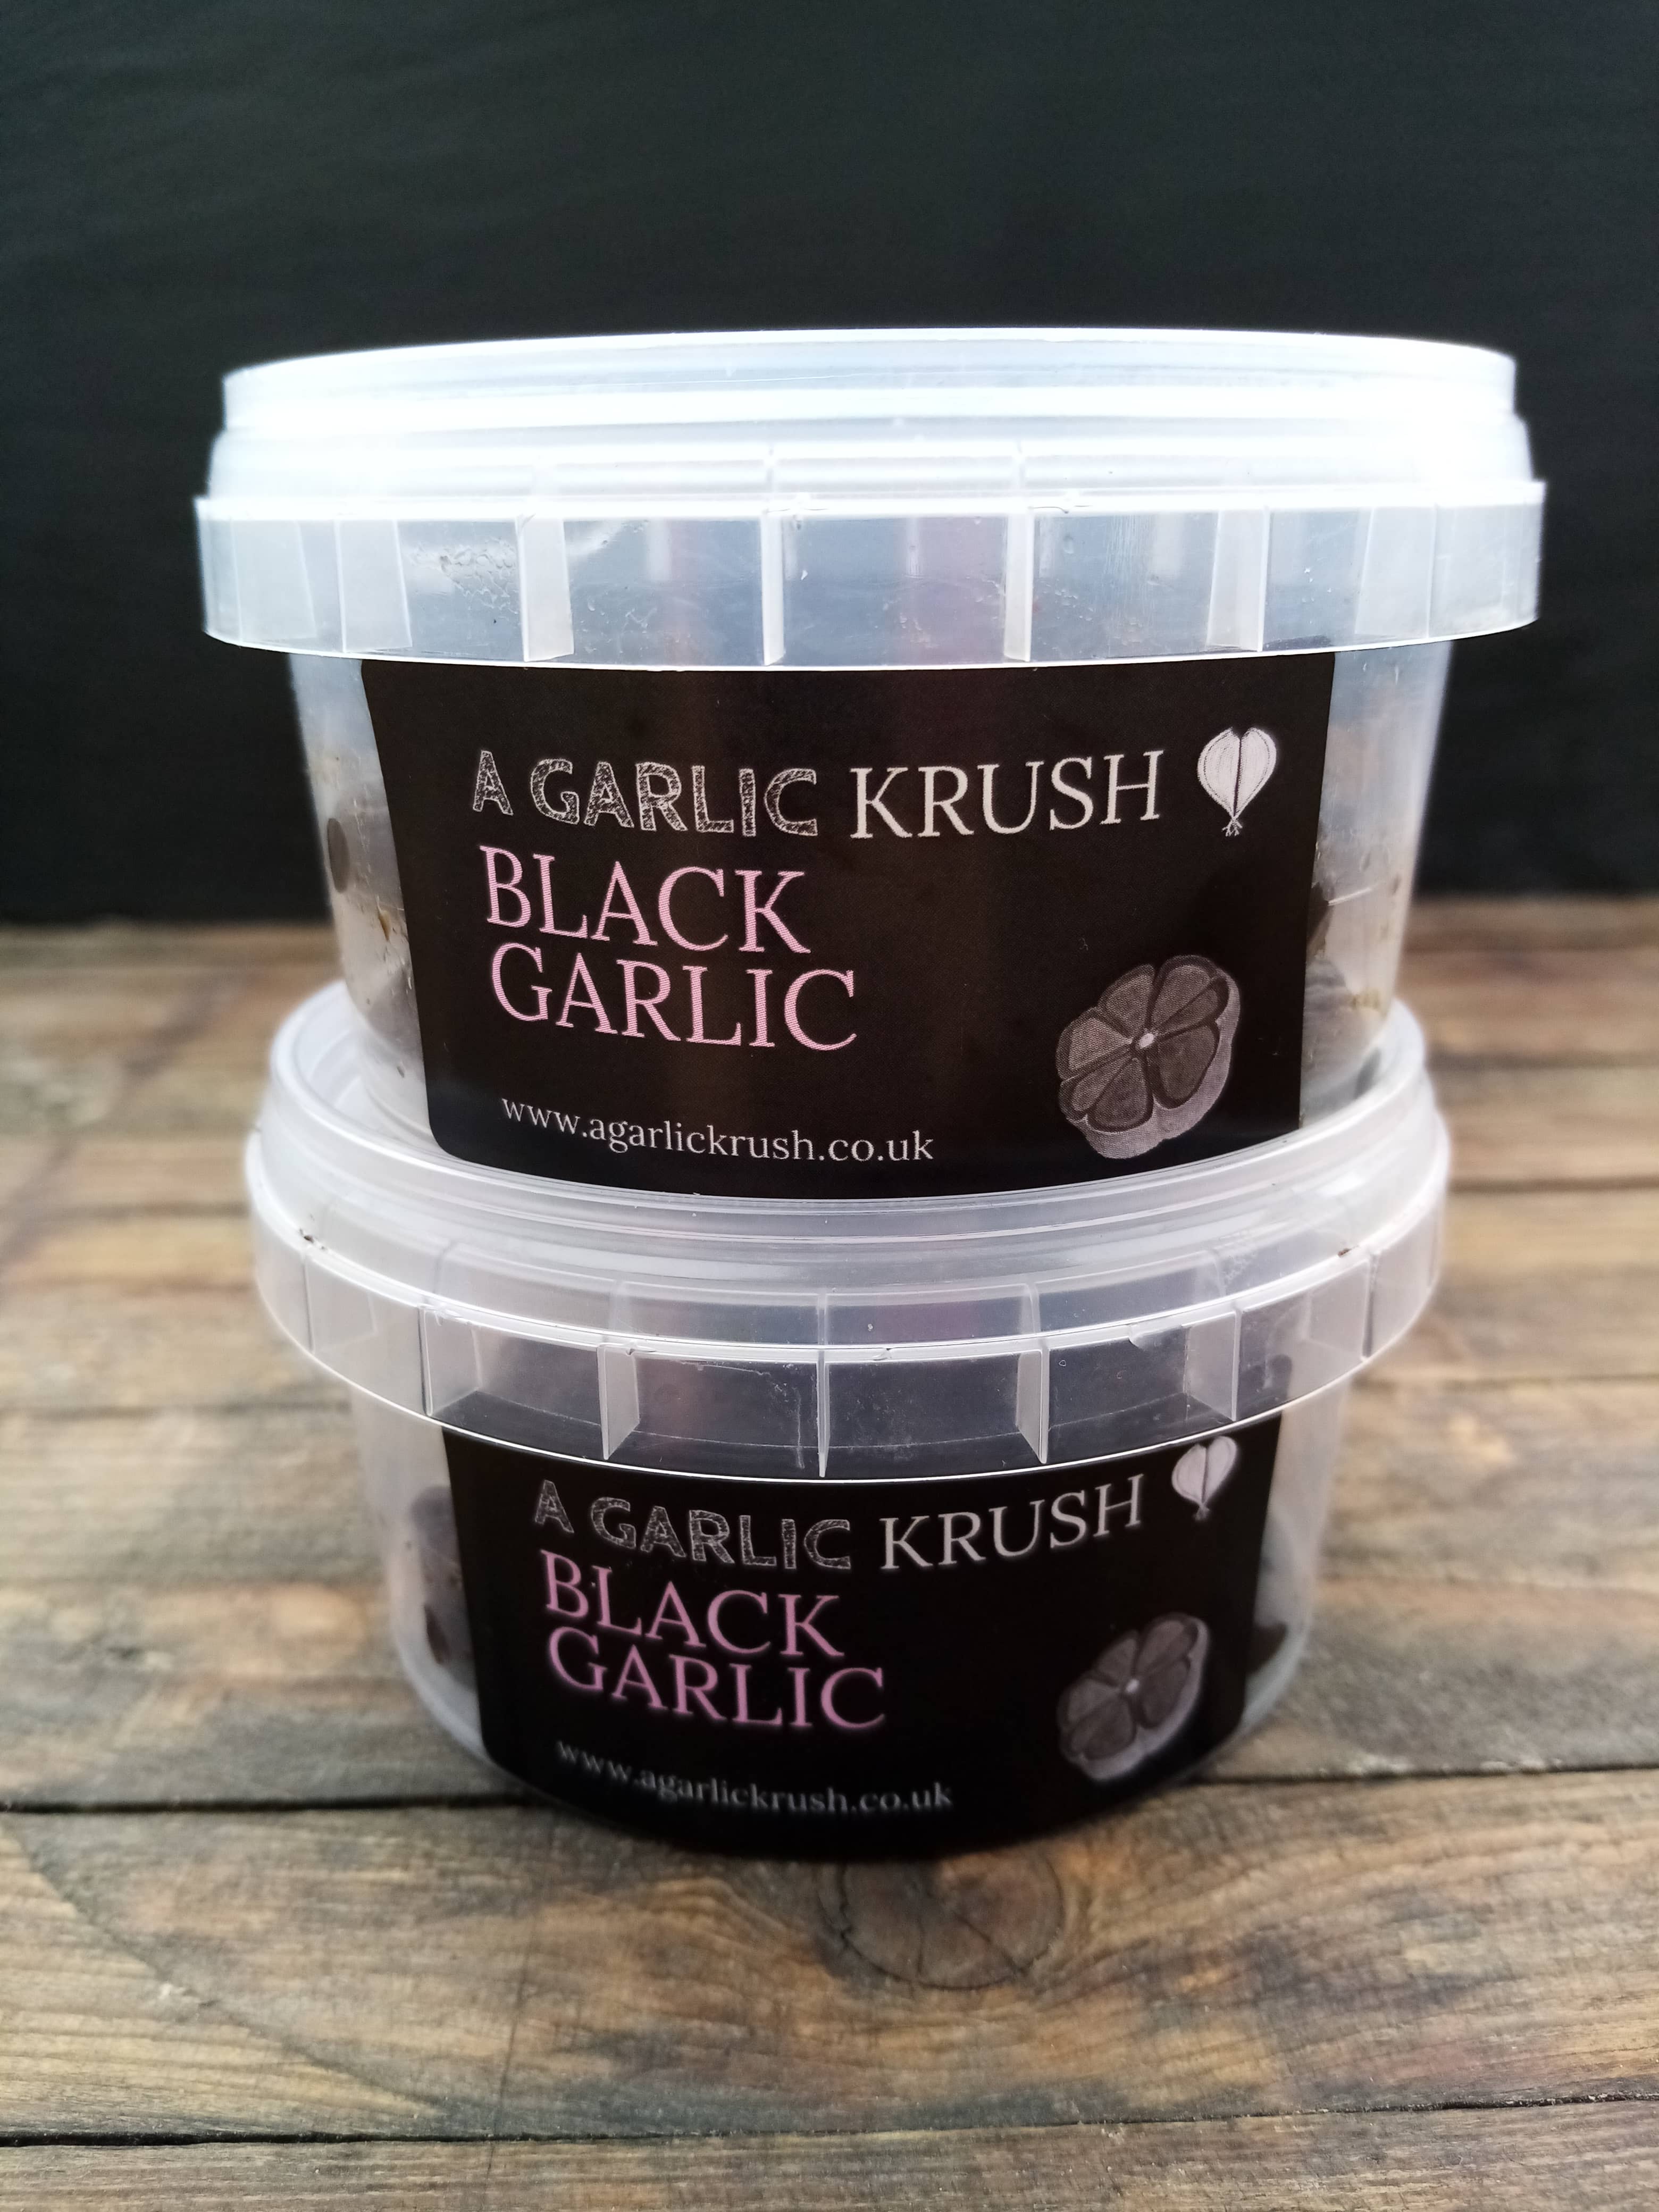 The Garlic Krush Pack